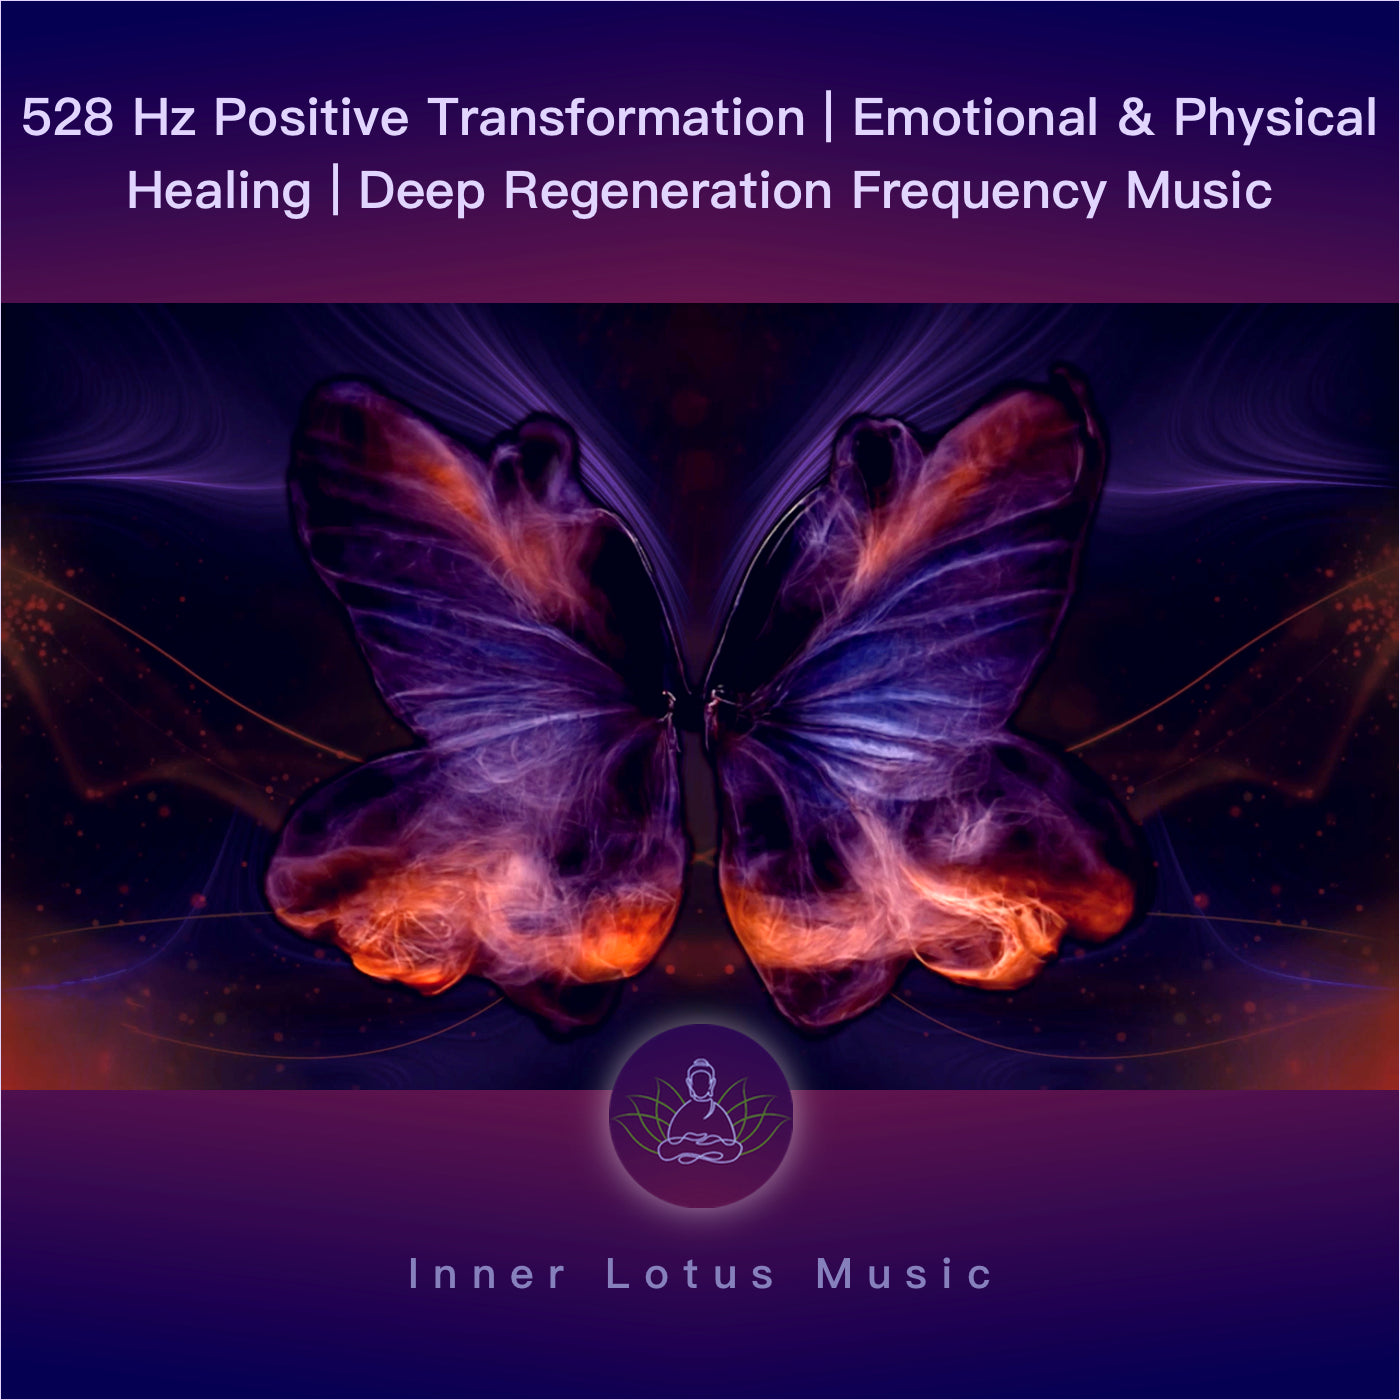 528 Hz Transformación Positiva | Curación Emocional y Física | Frecuencia de Regeneración Profunda